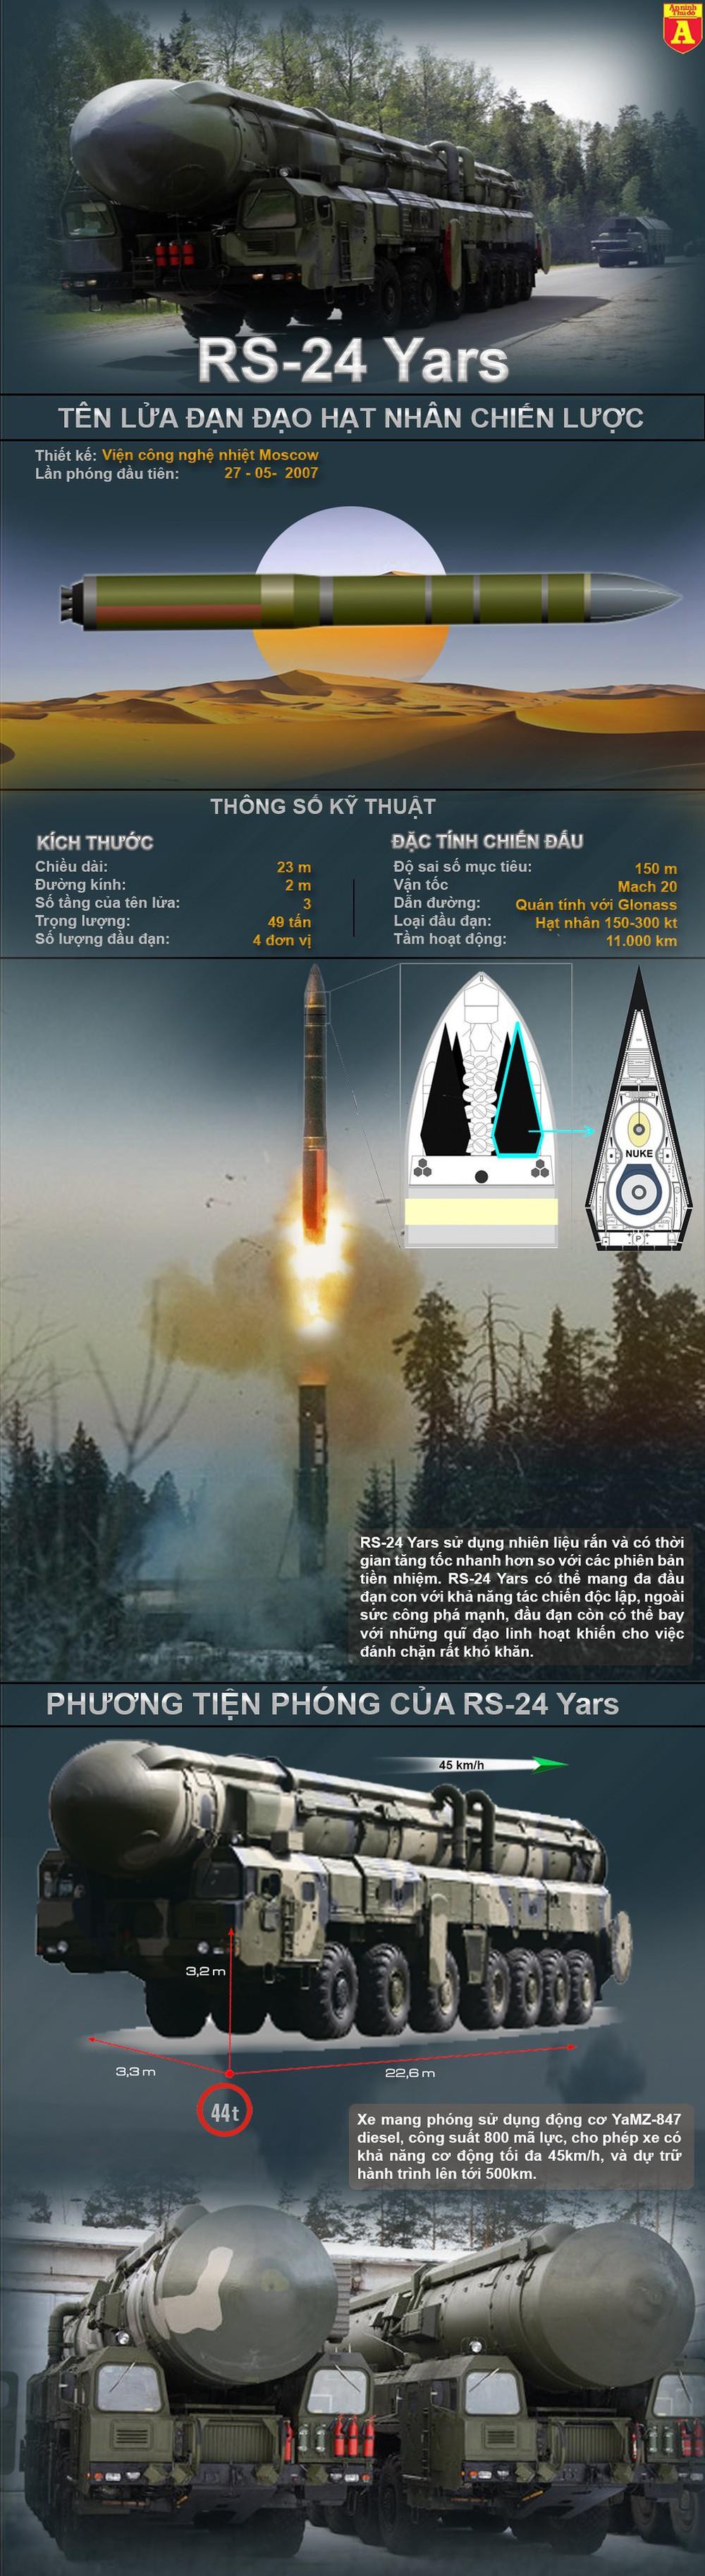 Tên lửa đạn đạo hạt nhân RS-24 Yars có thể xuyên thủng lá chắn phòng thủ NATO - Ảnh 1